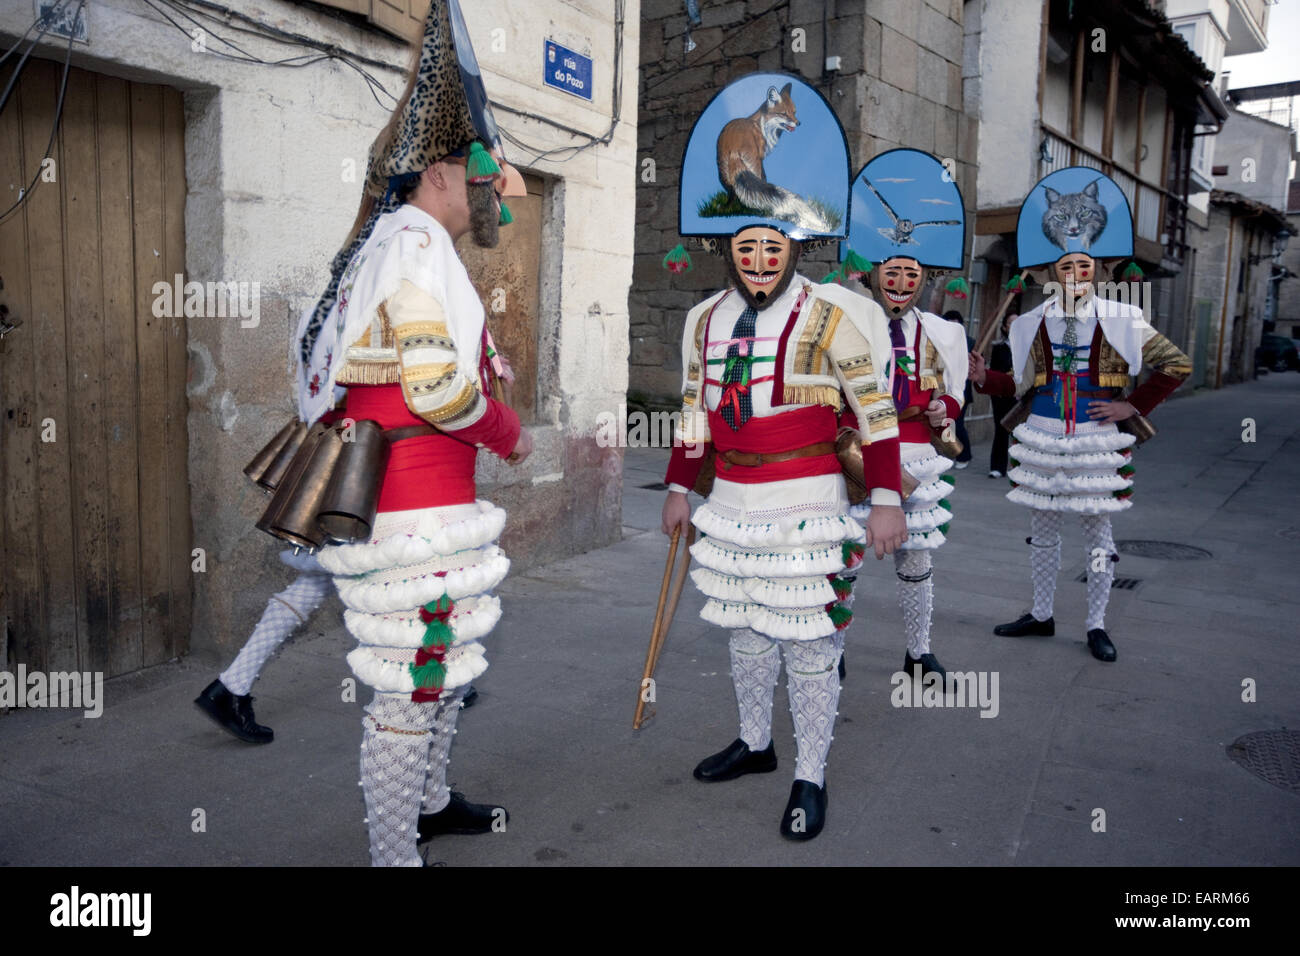 Plusieurs 'Cigarrons' personnages caractéristiques de la galicienne mars carnaval à travers la ville pendant le Carnaval samedi. Banque D'Images